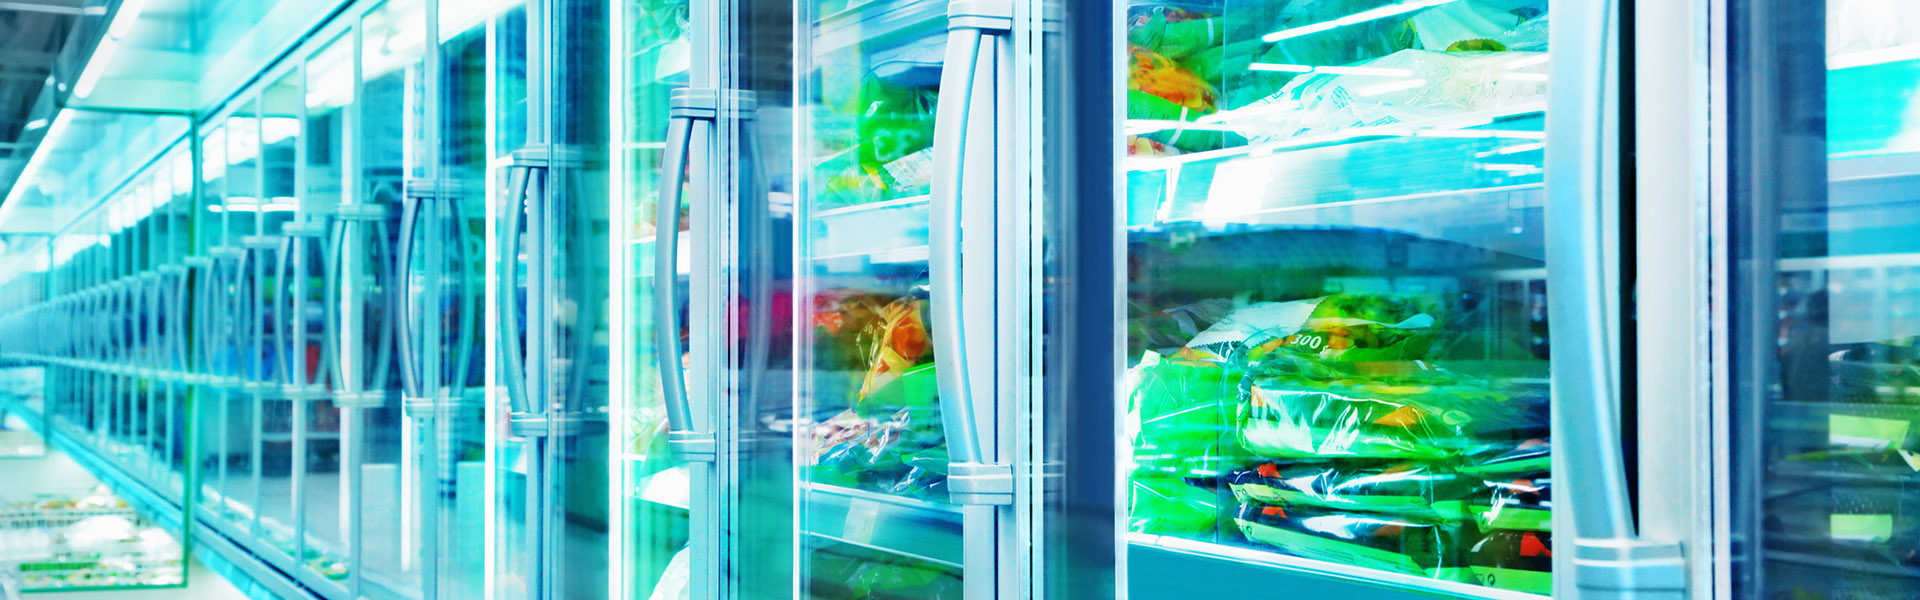 Supermarkt-Tiefkühltruhen bestückt mit Lebensmitteln verpackt in Plastik und Papier